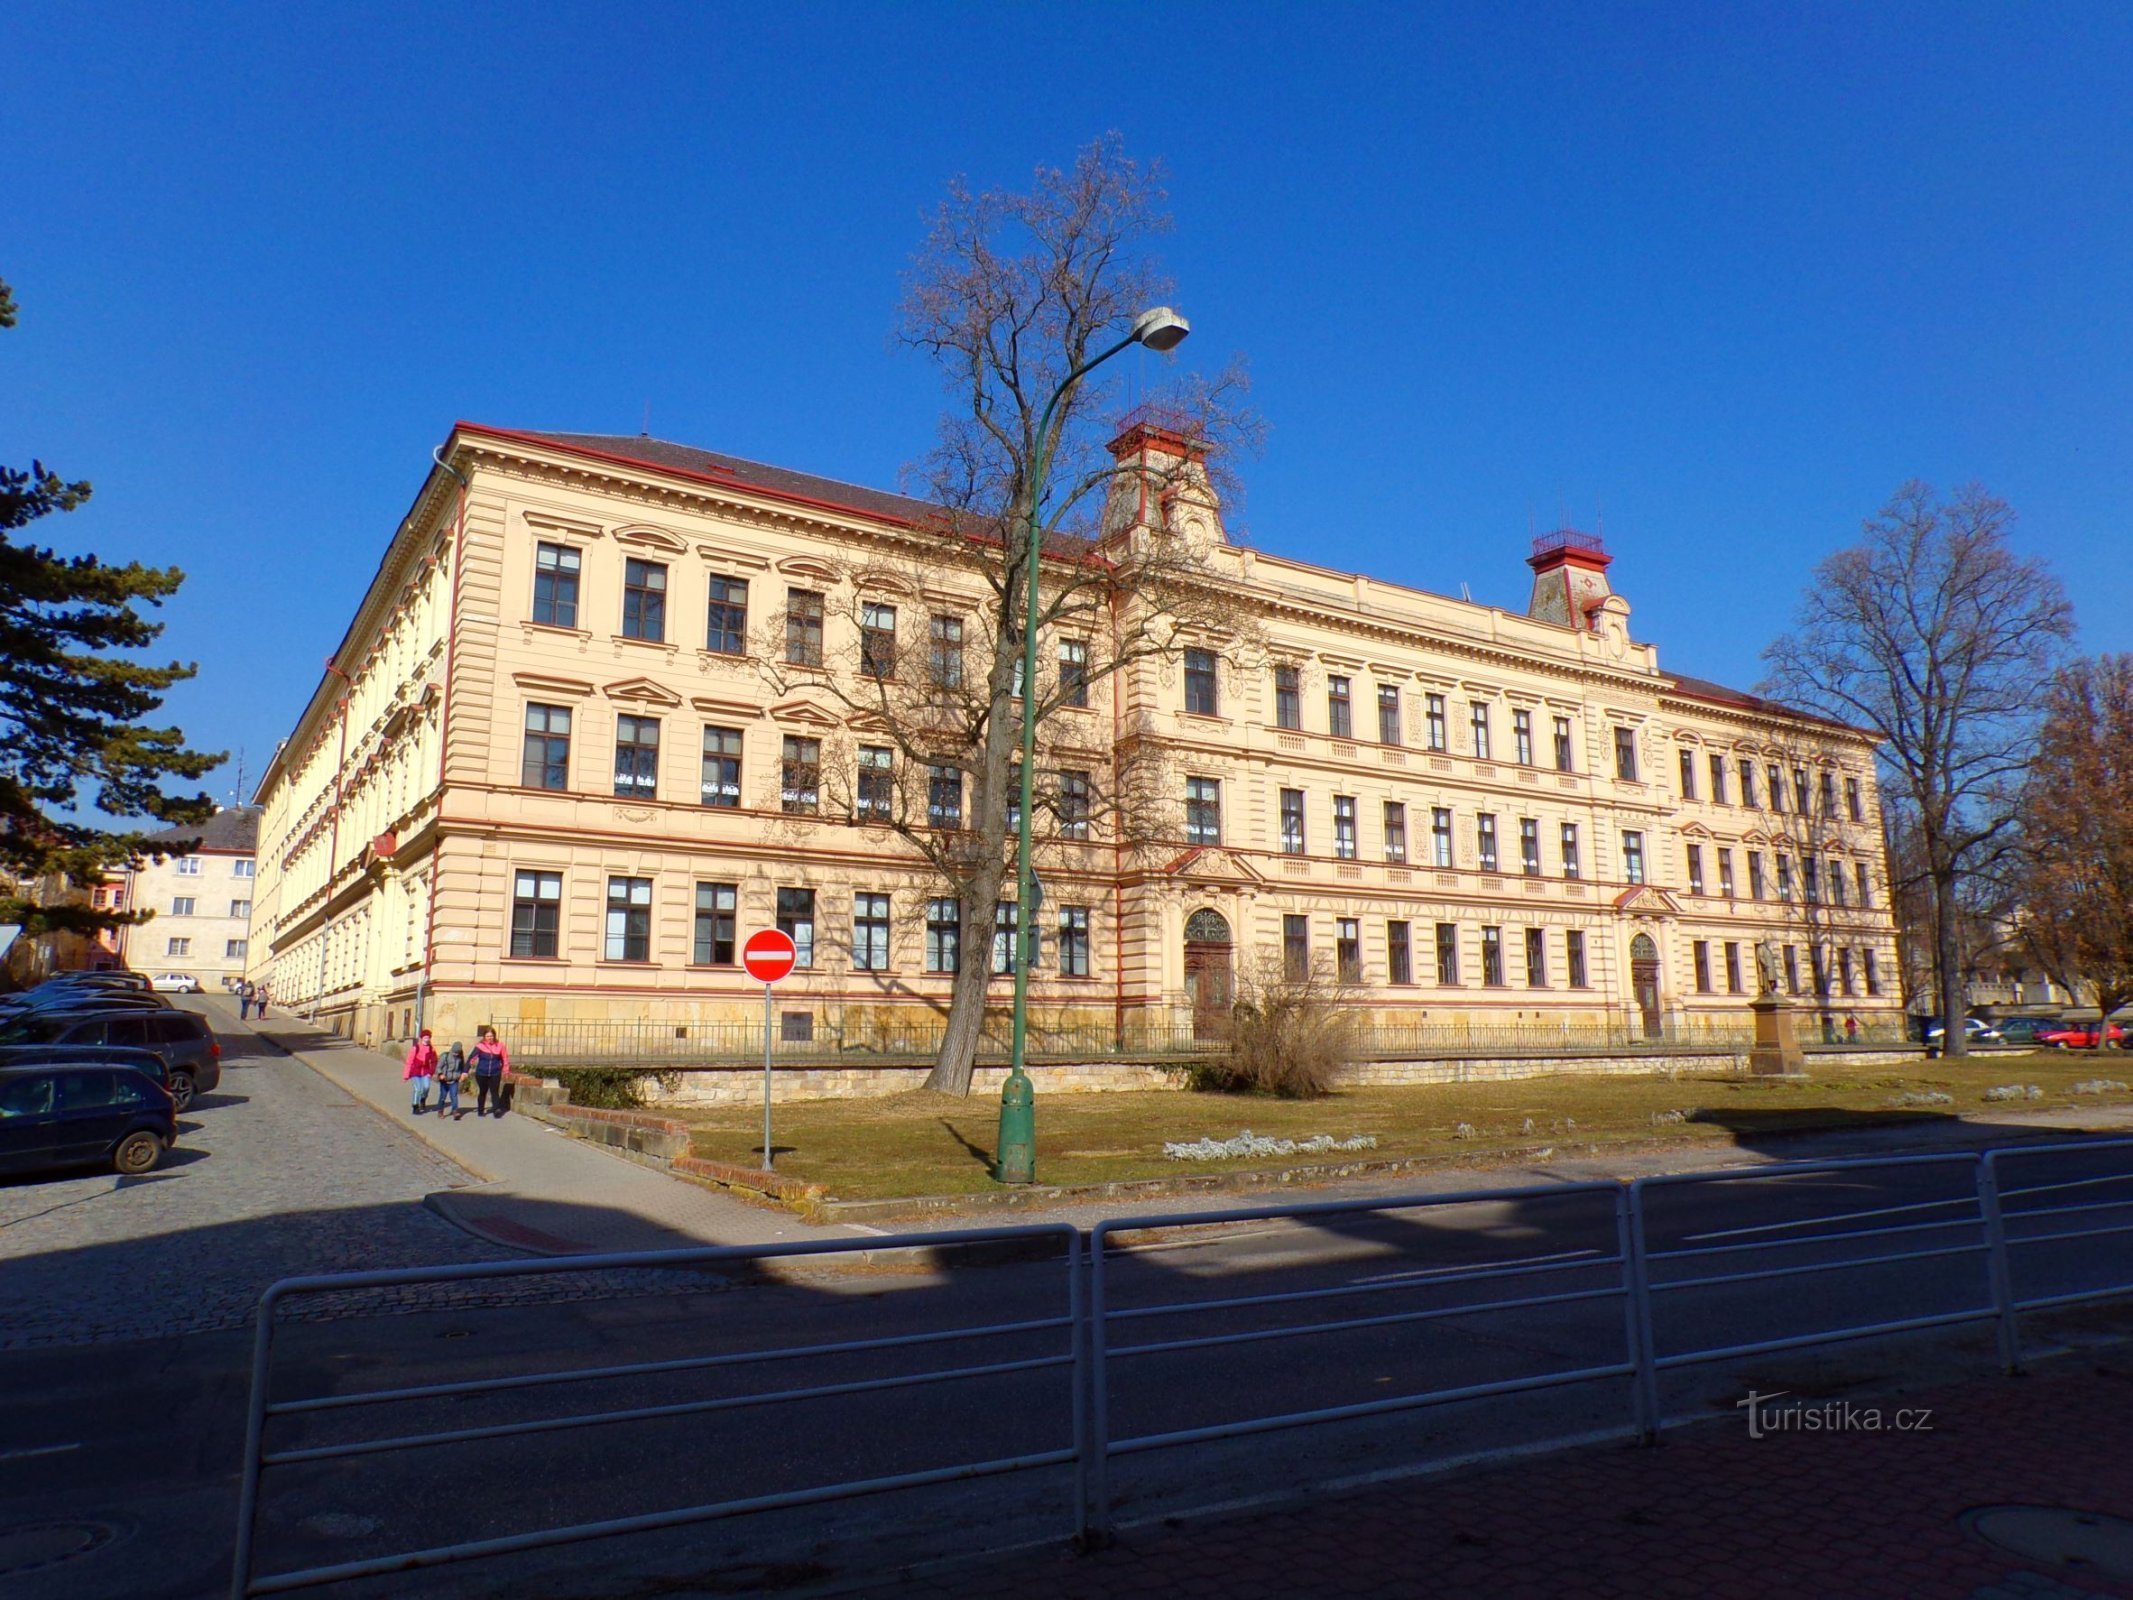 Tòa nhà trường tiểu học đầu tiên với tượng đài Jan Amos Comenius ở phía trước (Jičín, 1/3.3.2022/XNUMX)